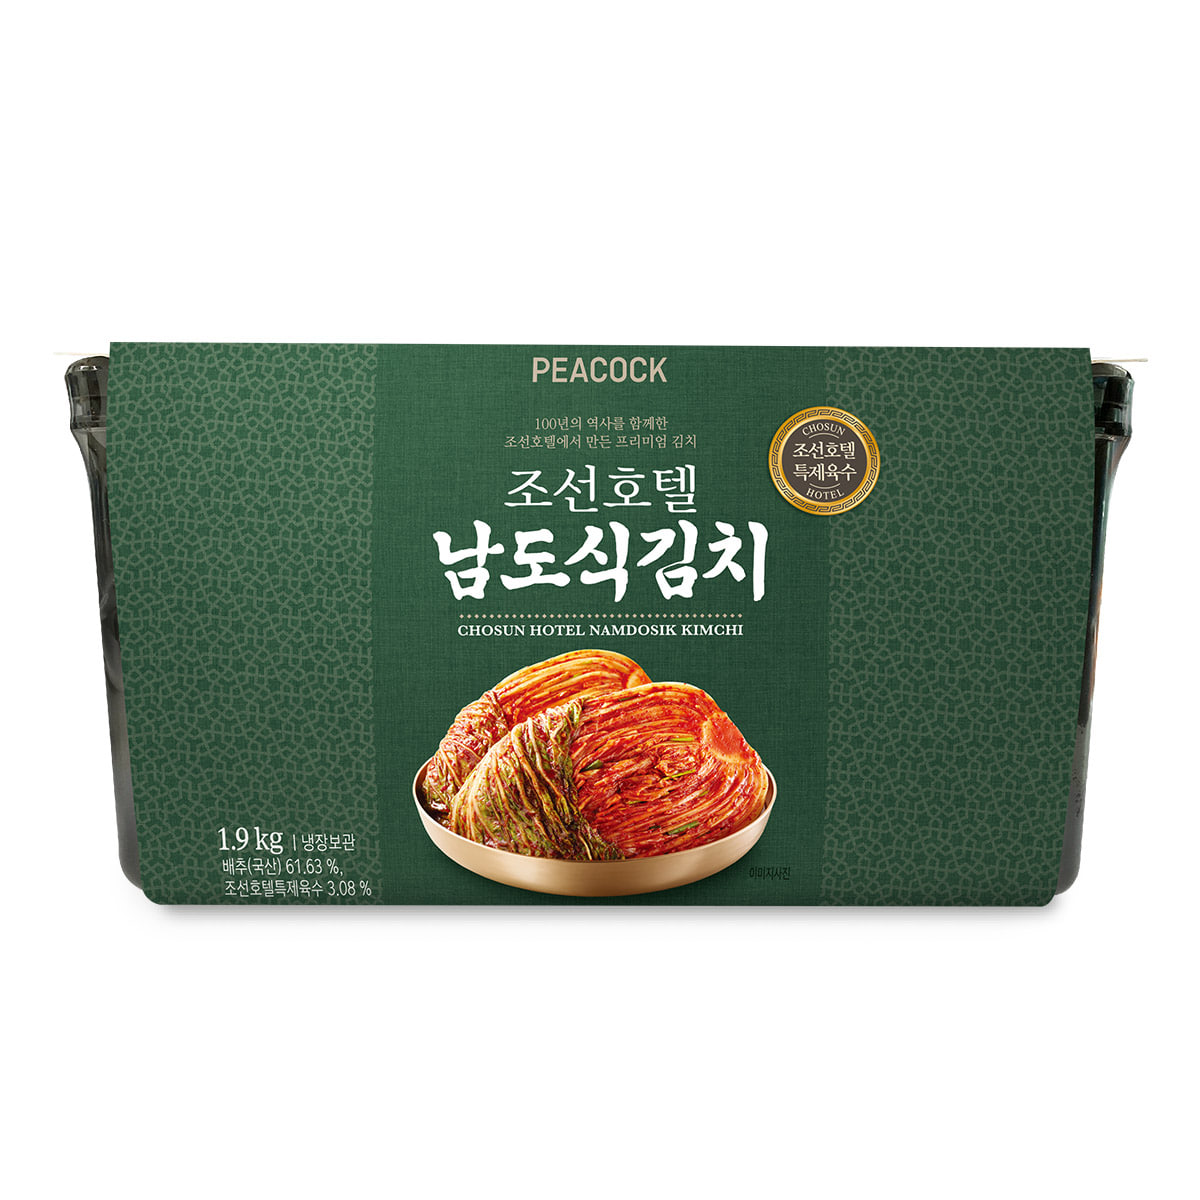 피코크 조선호텔 남도식김치 1.9kg + 무석박지 1kg (총 2.9kg)